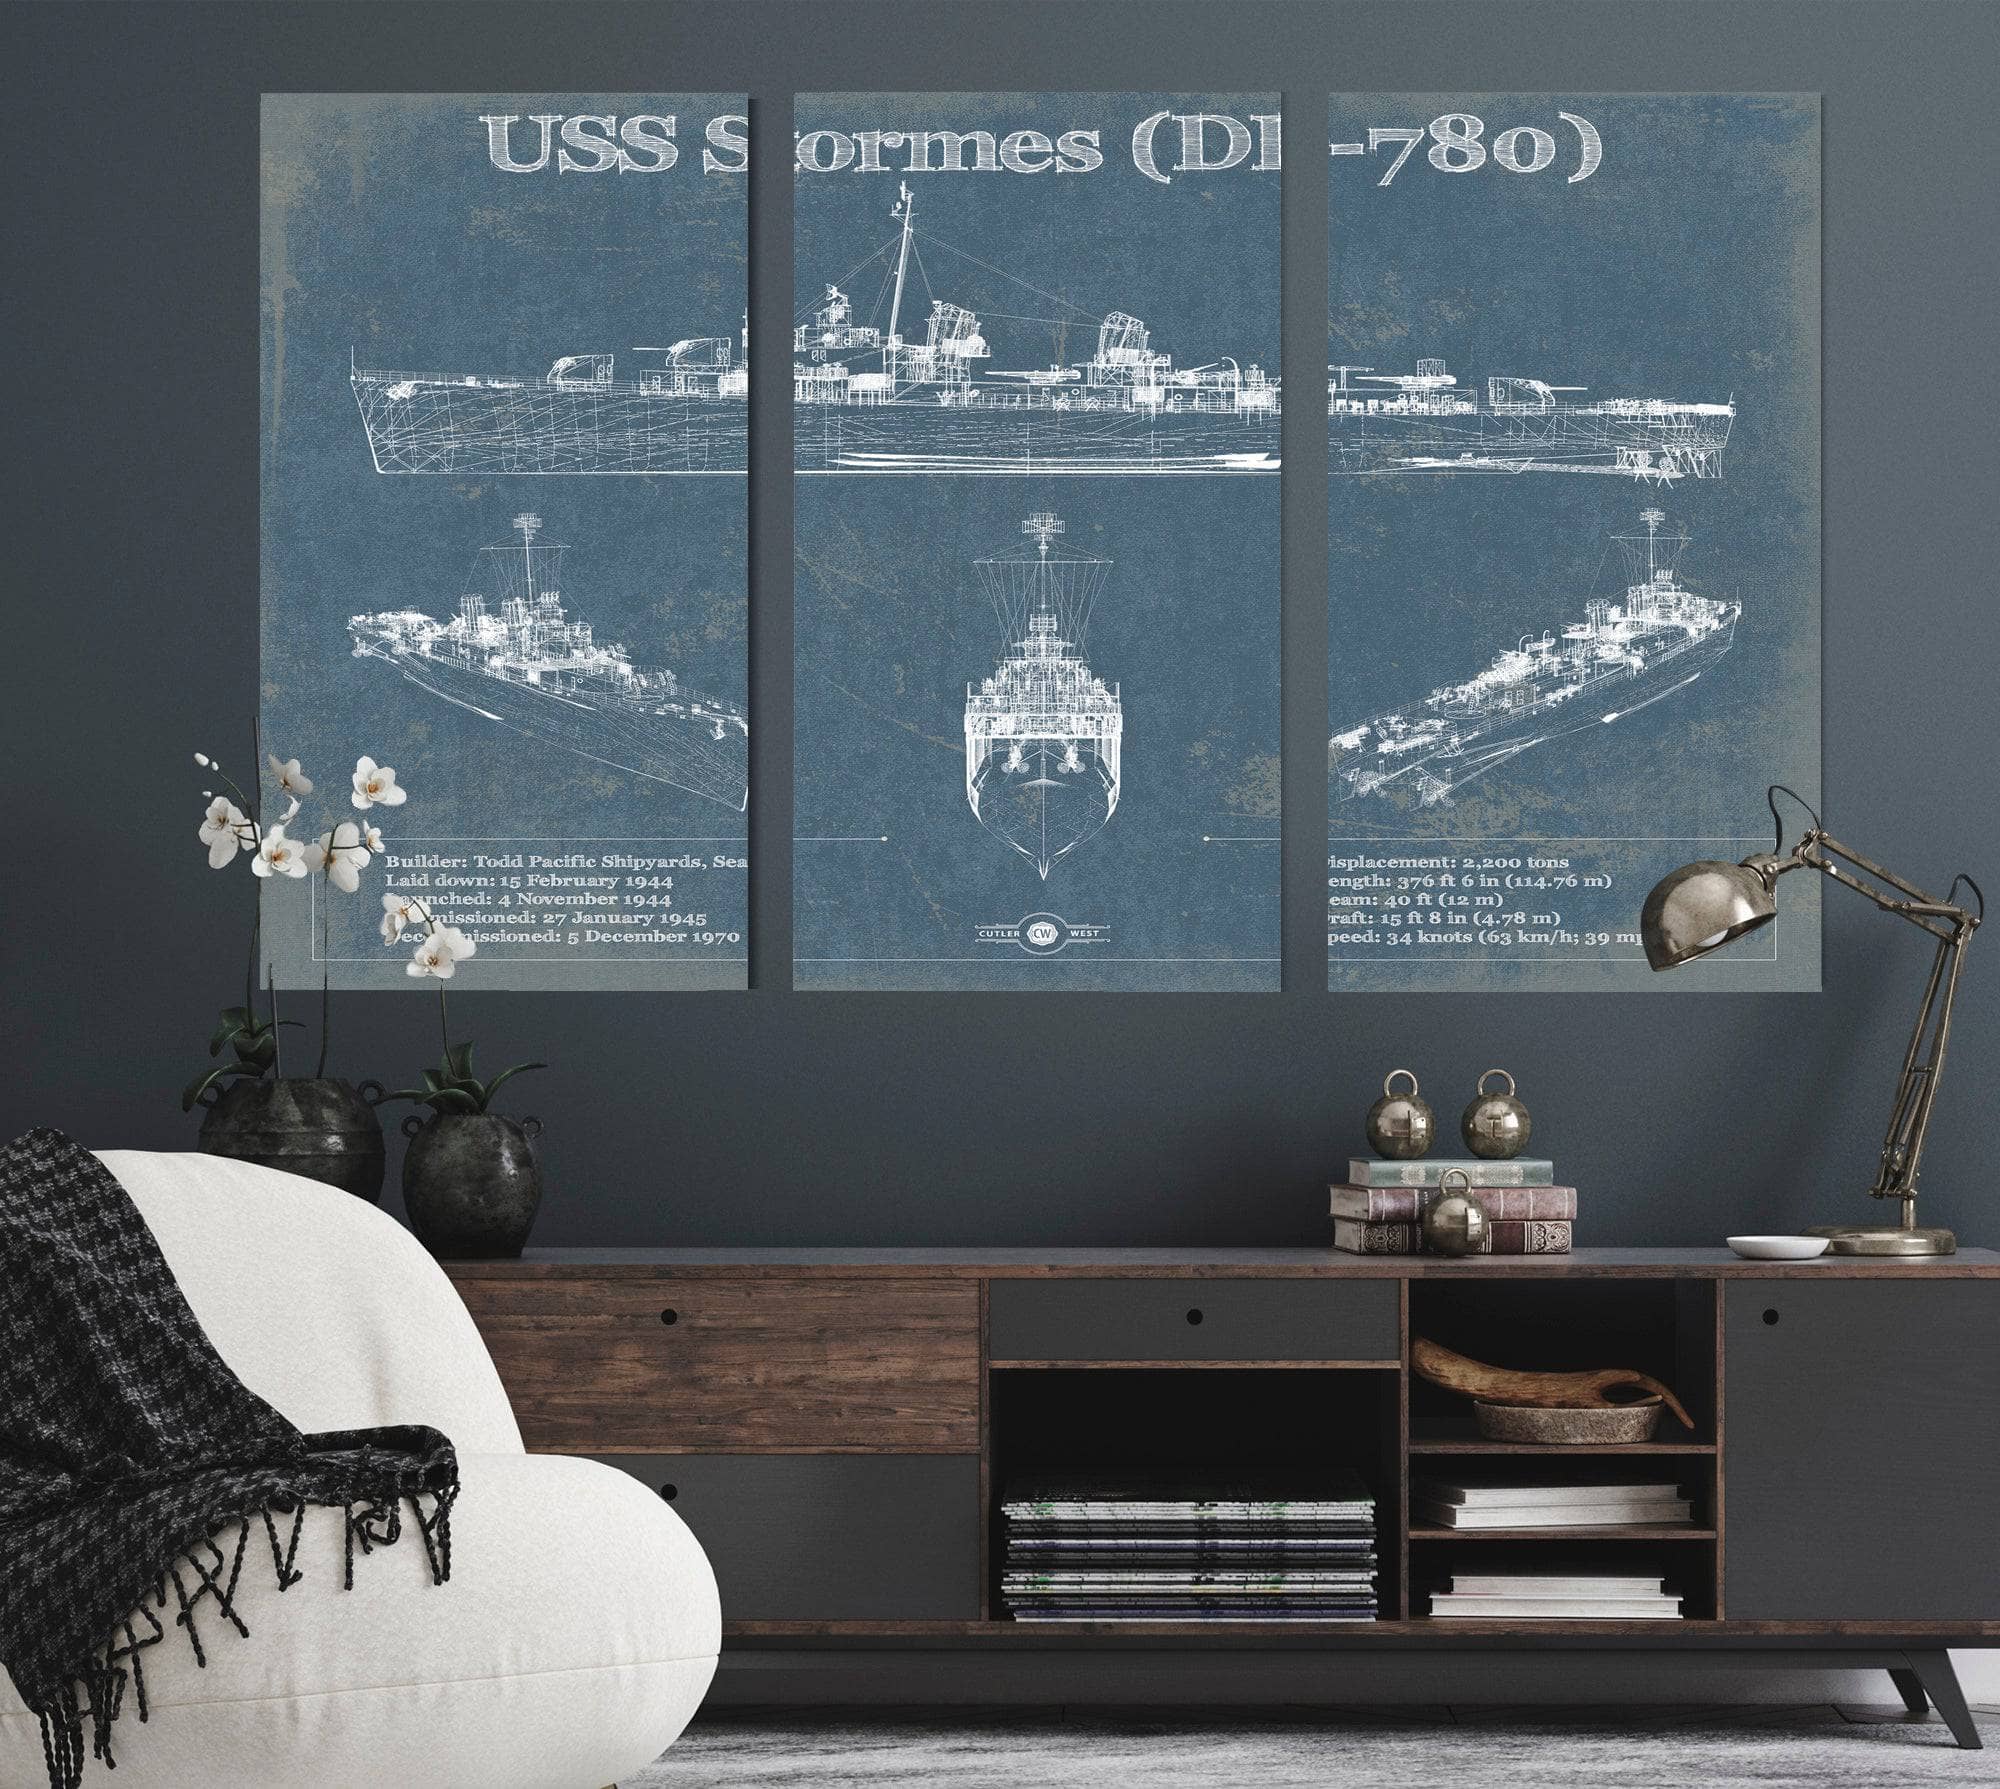 USS Stormes (DD-780) Allen M. Sumner-class Destroyer Blueprint Original Military Wall Art